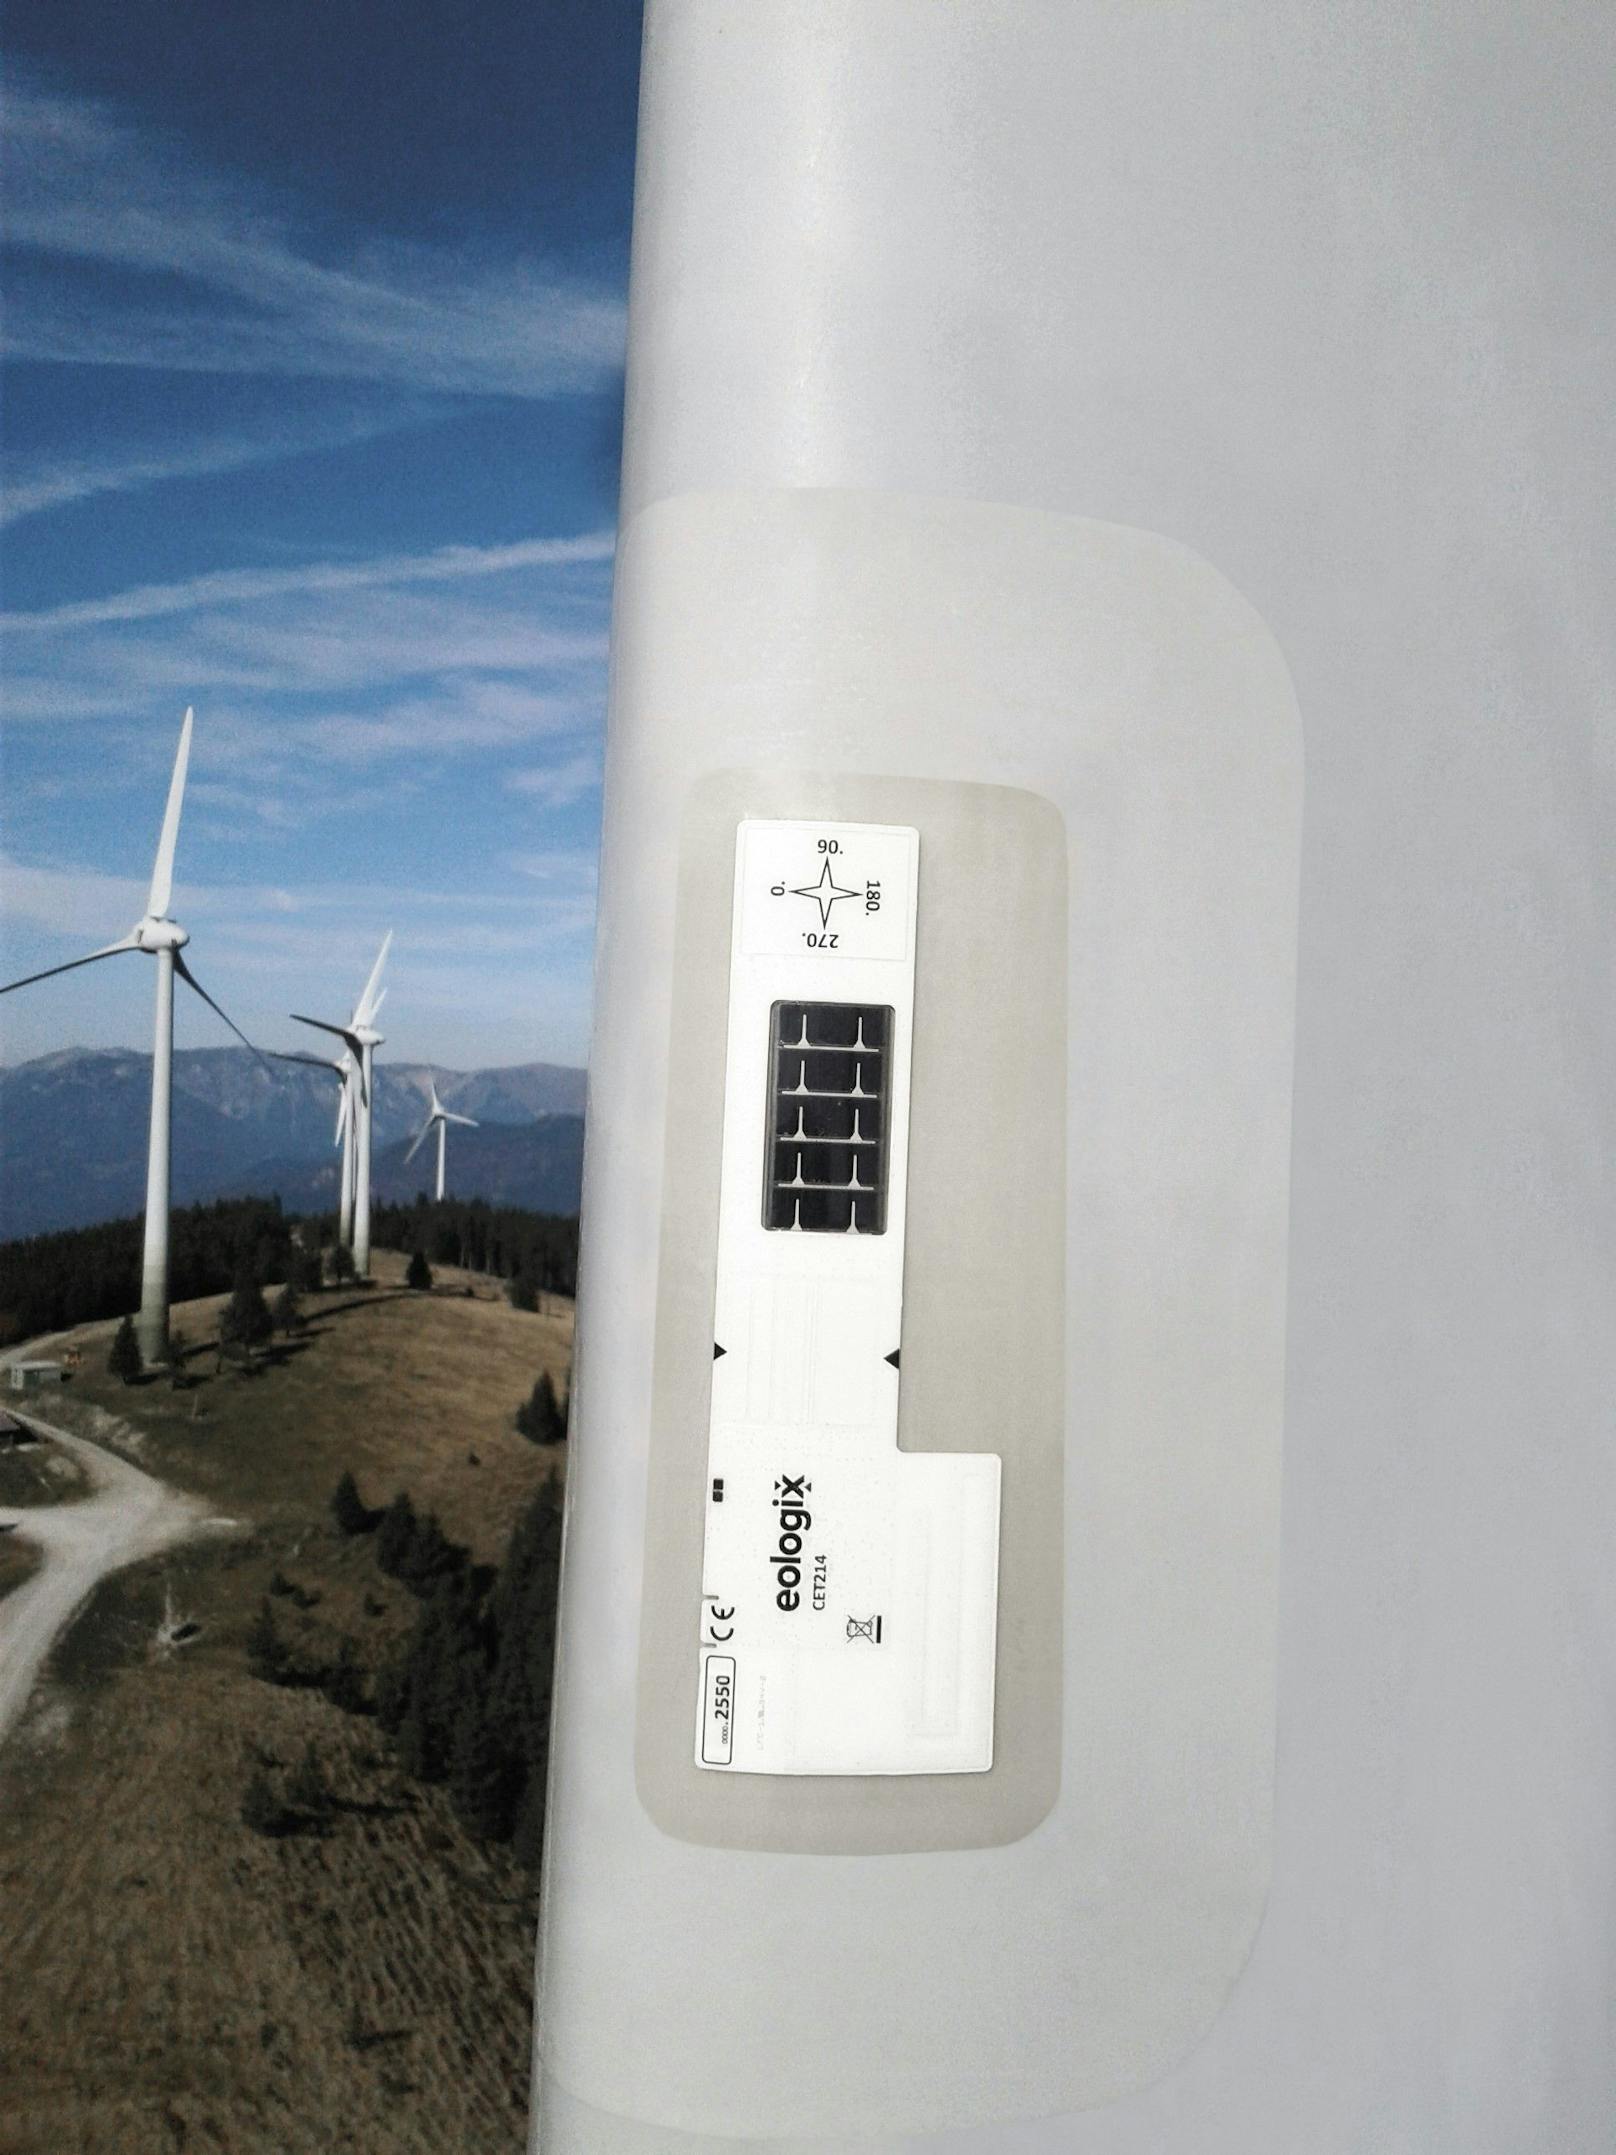 Die Sensorik, welche direkt auf die Rotorblattoberfläche geklebt wird, sorgt dafür, dass Windenergieanlagen in allen Witterungsbedingungen optimal laufen und beste Performance erzielen.